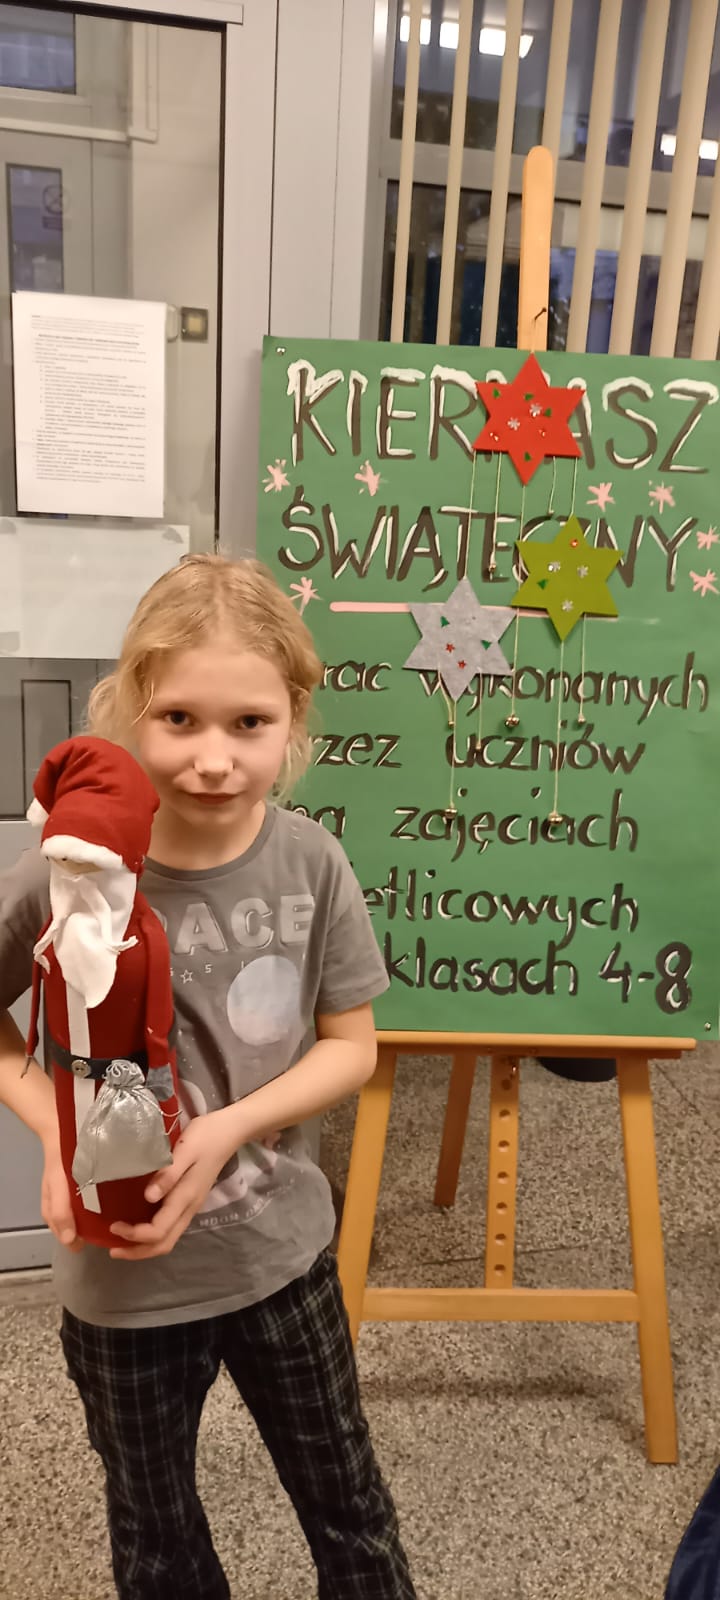 Uczennica z błąd włosami trzyma w ręku Mikołaja. Za nią stoi tablica informująca o kiermaszu bożonarodzeniowym.